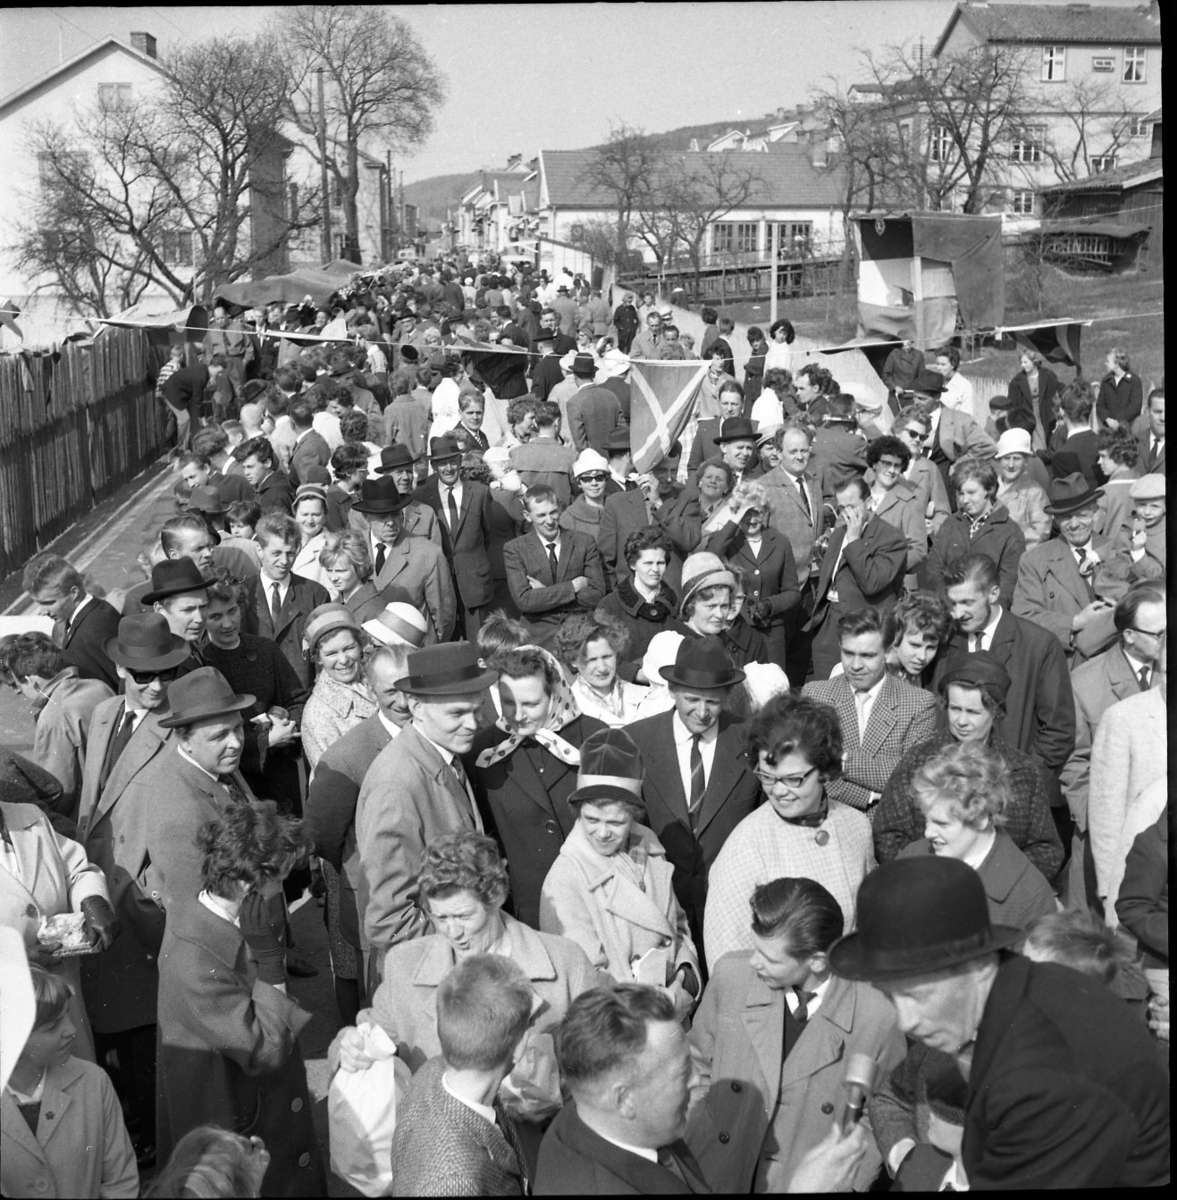 En bild tagen ned mot en stor folksamling på Sjögatan bakom Hallska gården. Till höger i bild syns kubben på en man som intervjuas, av möjligen Herbert Gustafsson. En ung kvinna i närheten, i ljus kappa och glasögon, är möjligen Anita Johansson.
Till vänster anas en provisorisk bowlingbana.